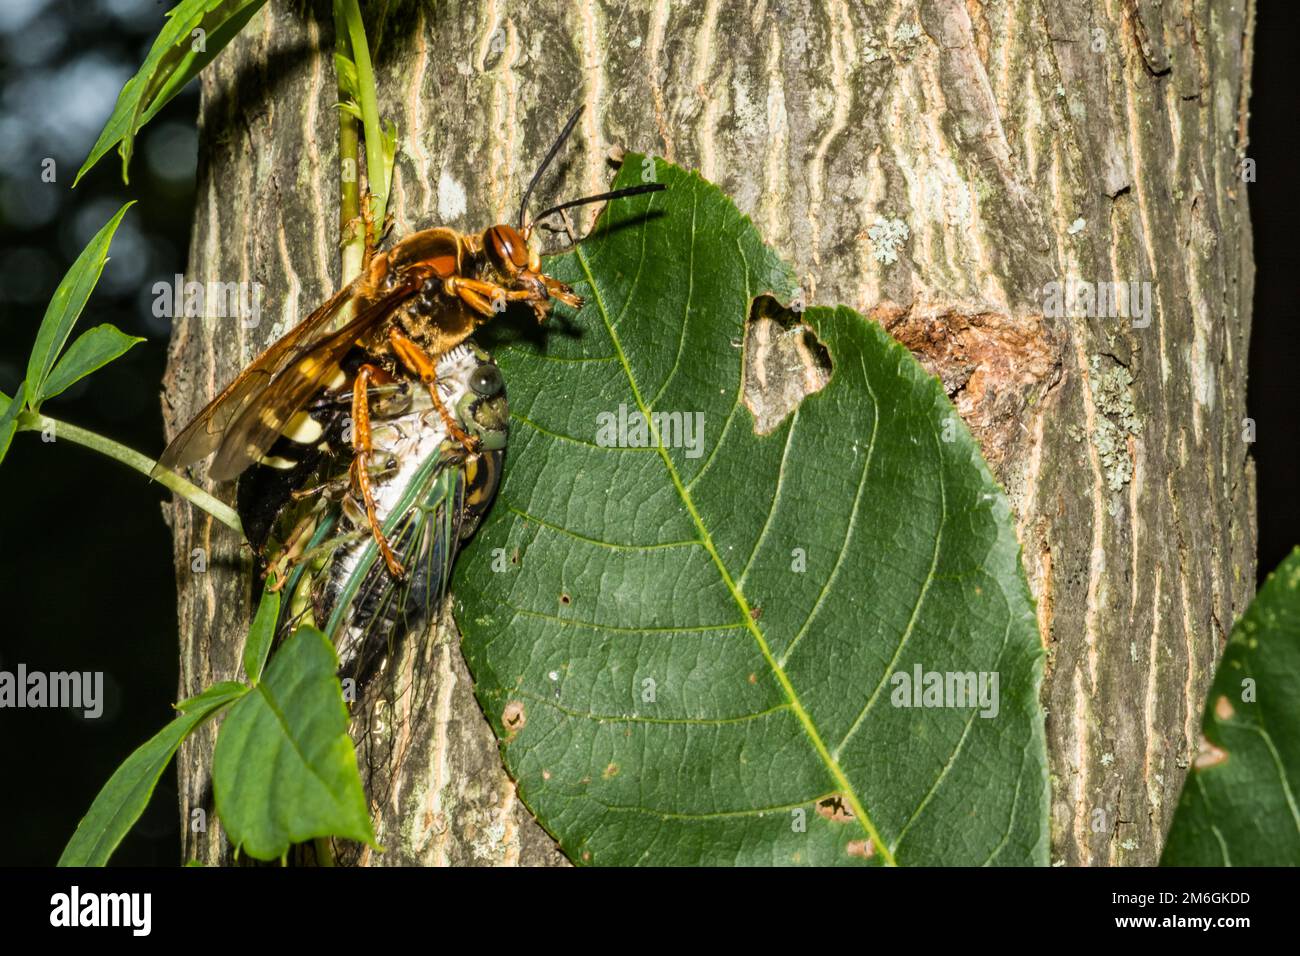 Eastern Cicada Killer - Sphecius speciosus Stock Photo